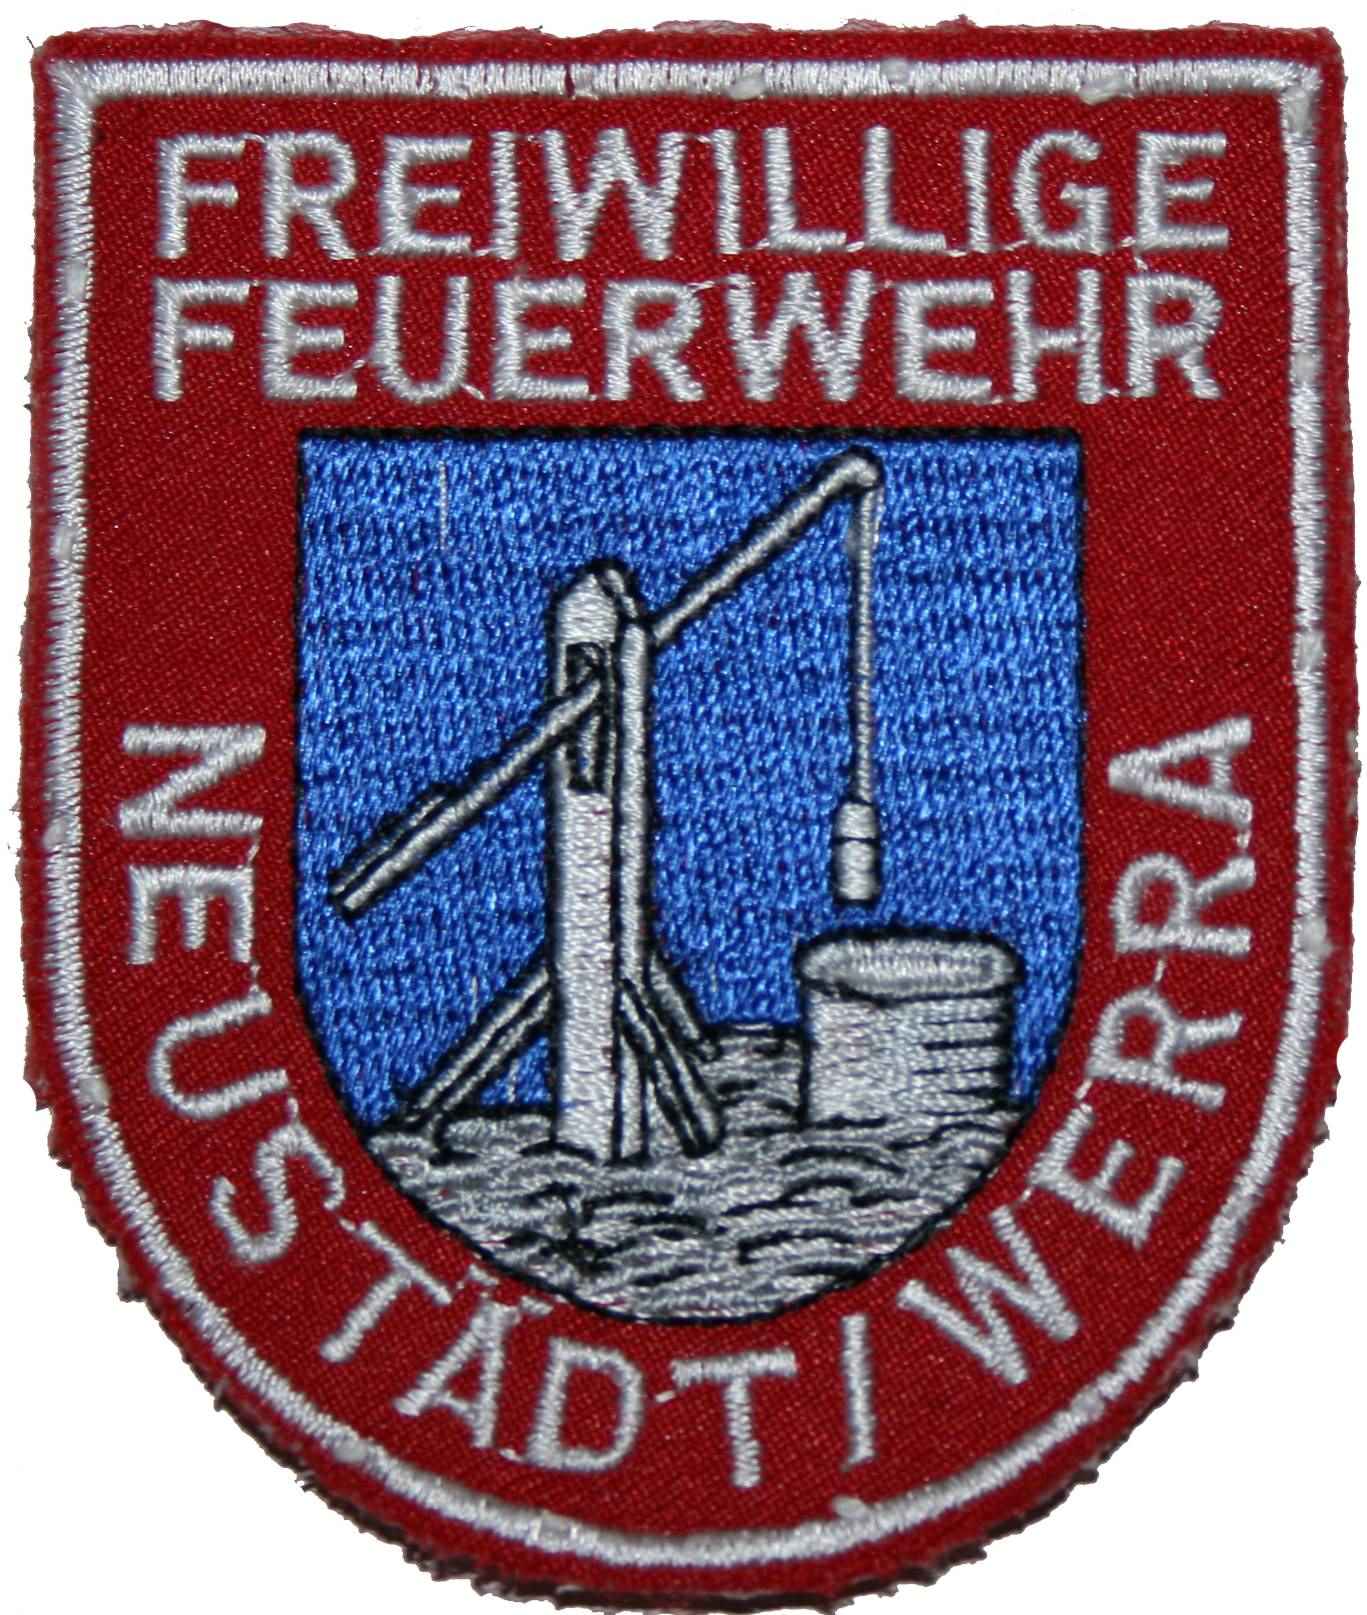 Neustadt Werra